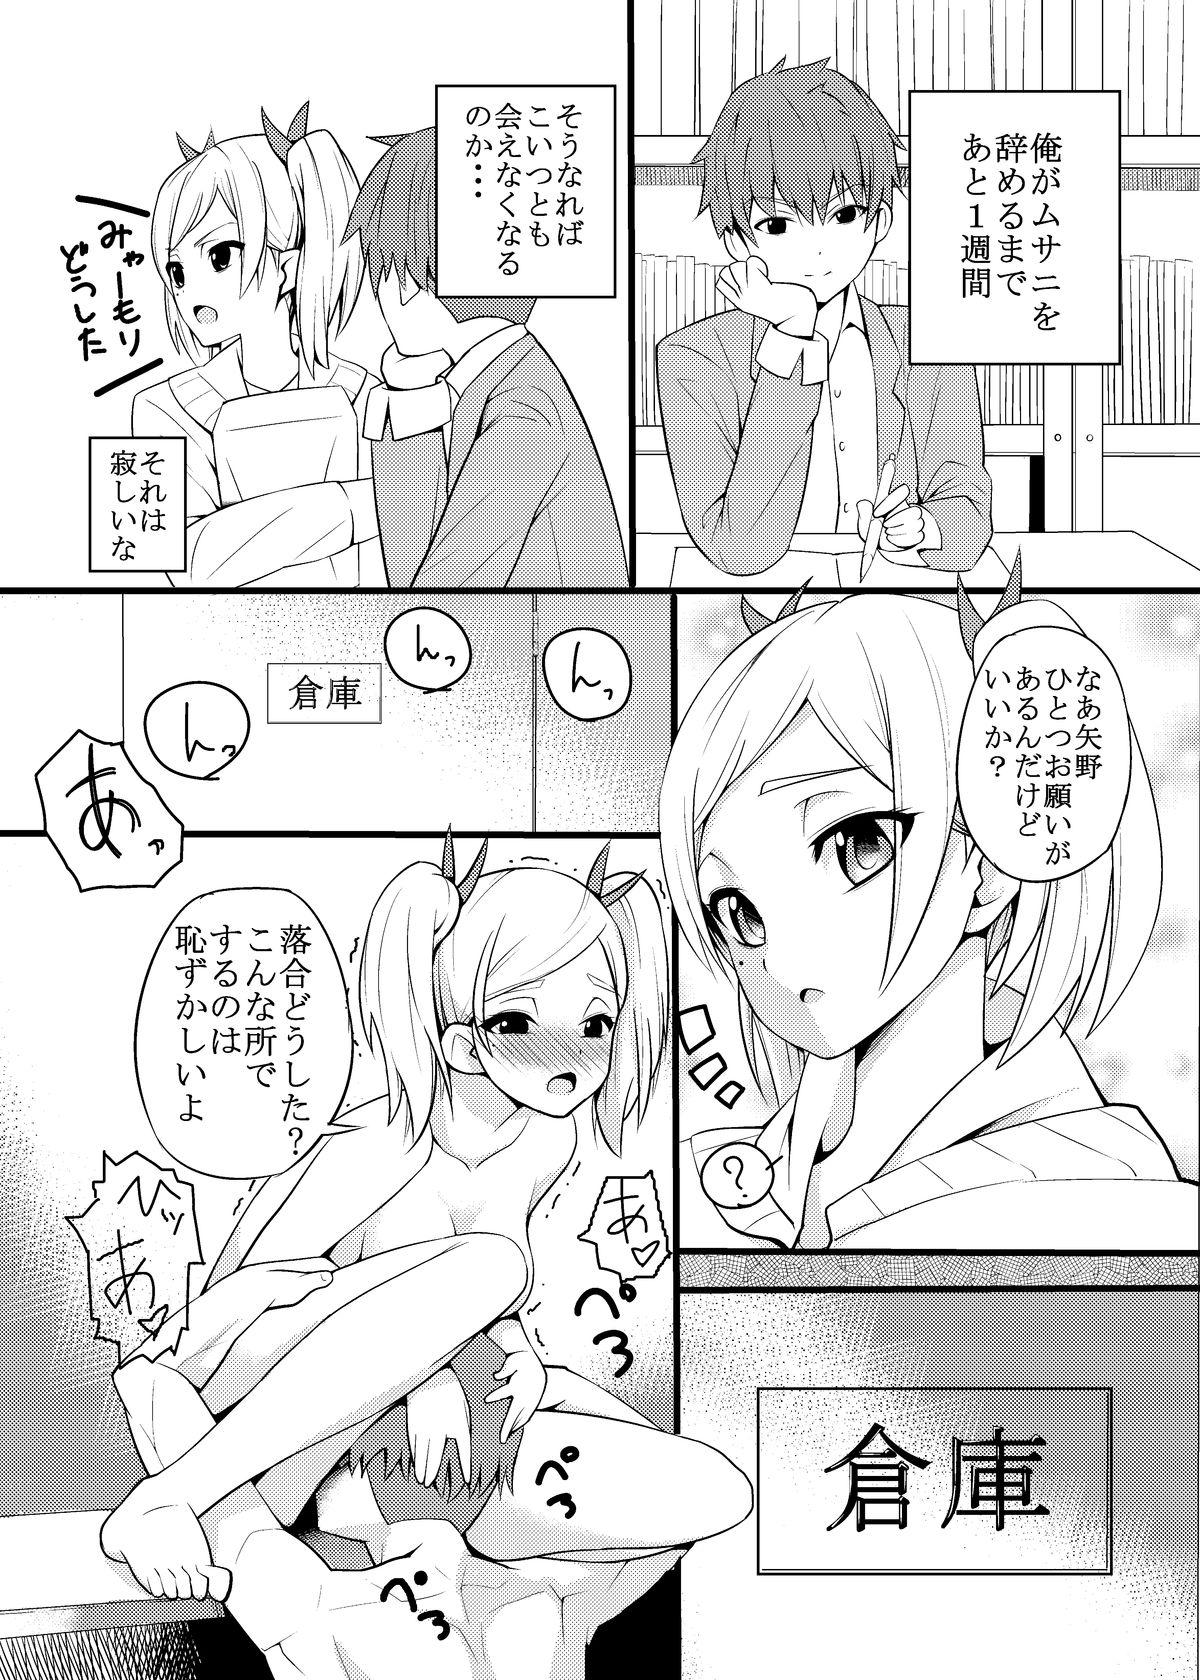 Peludo Yano Senpai no H na Manga - Shirobako High Definition - Page 2